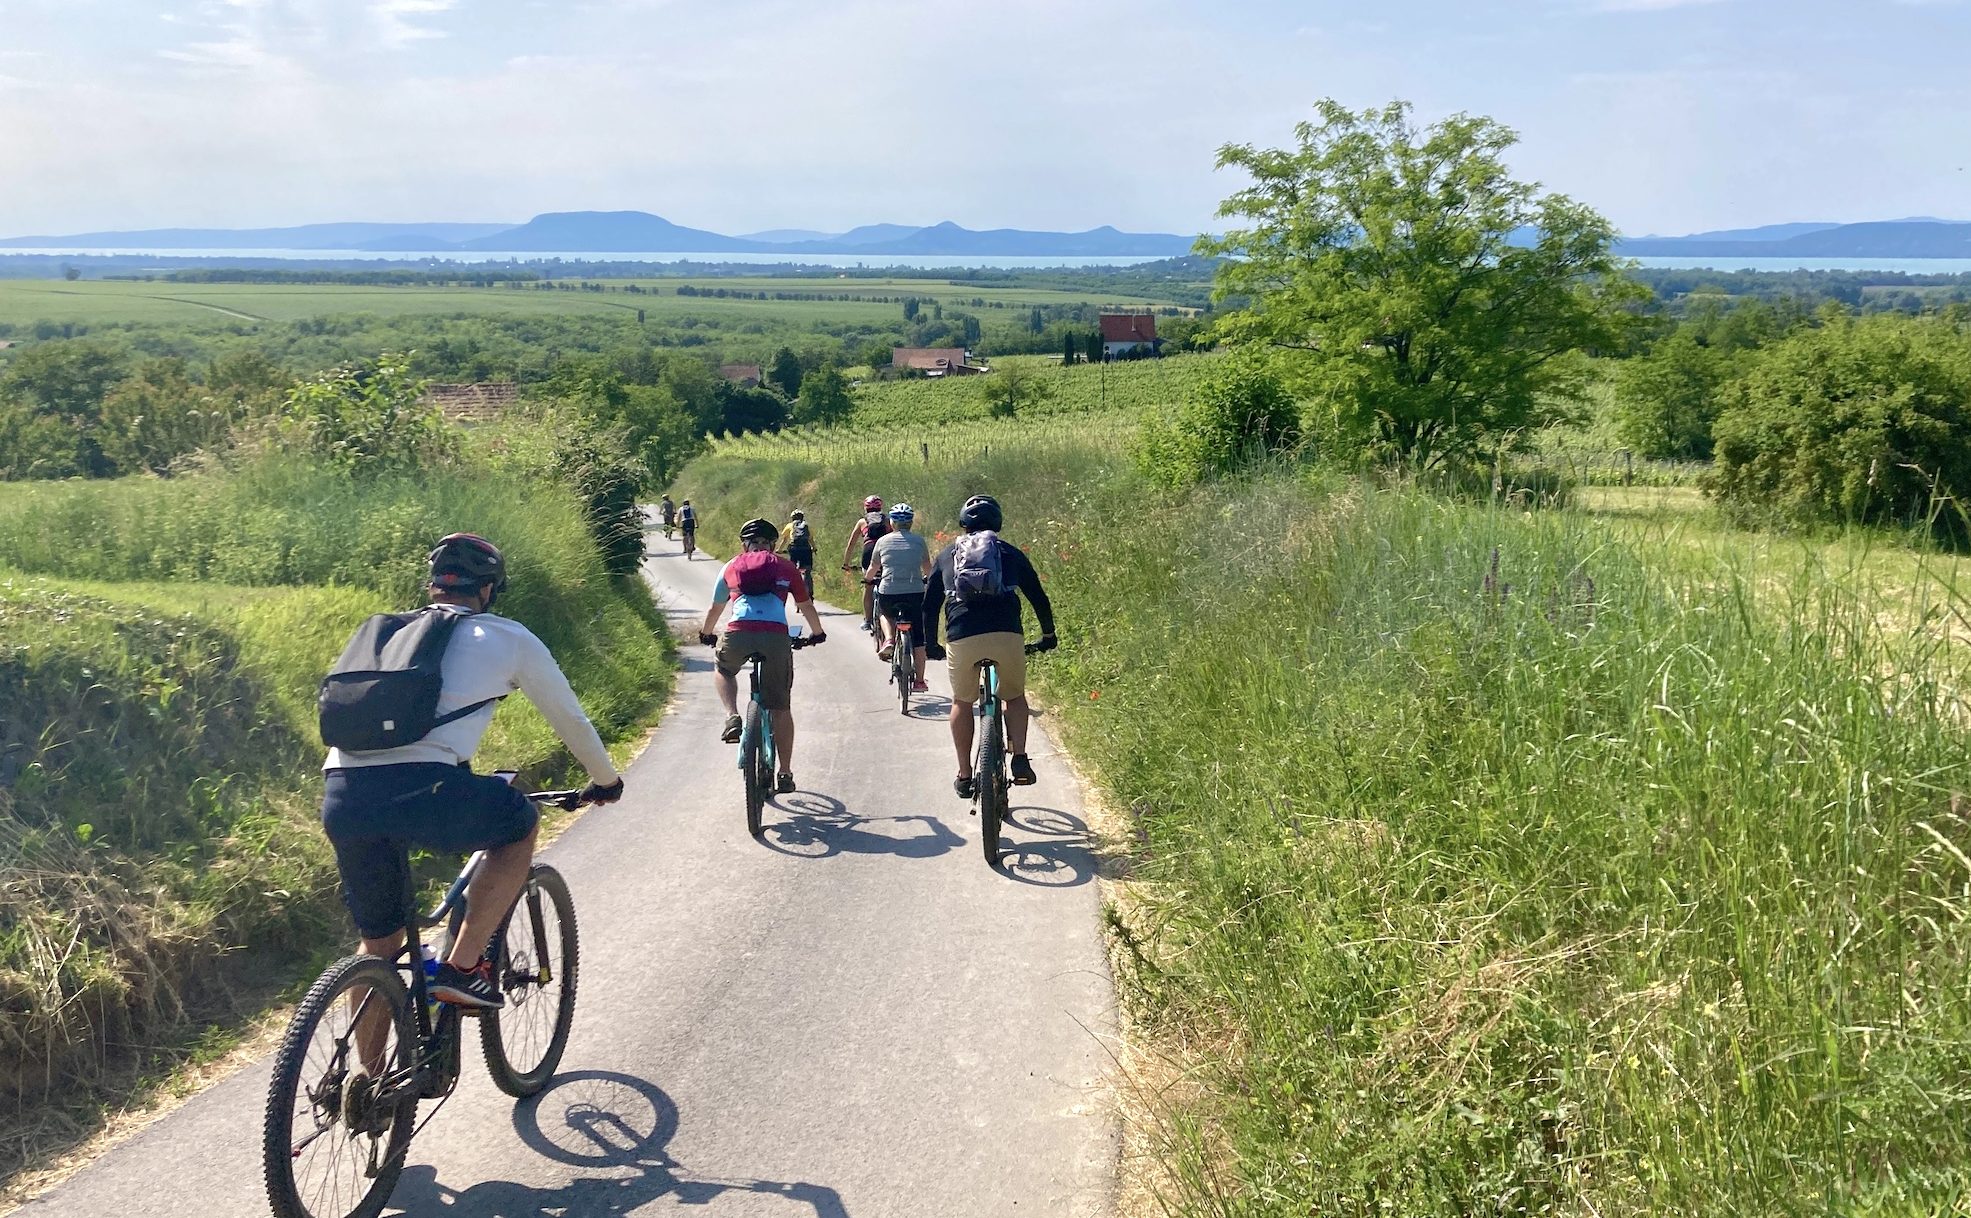 Bicycle Tourism Rapidly Growing at Lake Balaton